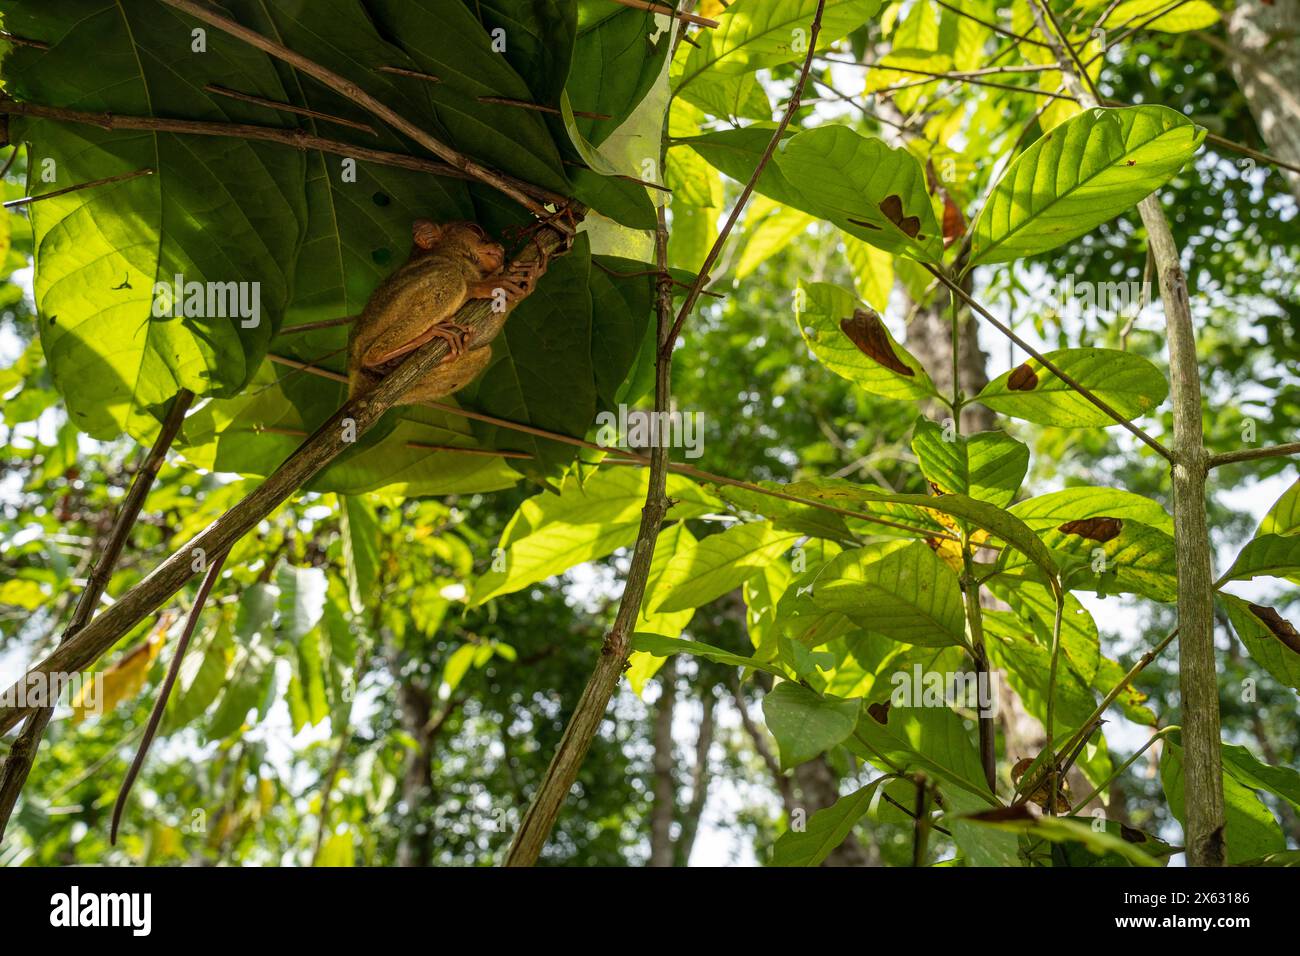 Nascosto tra il verde del fogliame, un tarsier si aggrappa silenziosamente a un ramo nella sua lussureggiante foresta pluviale. Questa immagine cattura il minuscolo primate in un raro mo Foto Stock